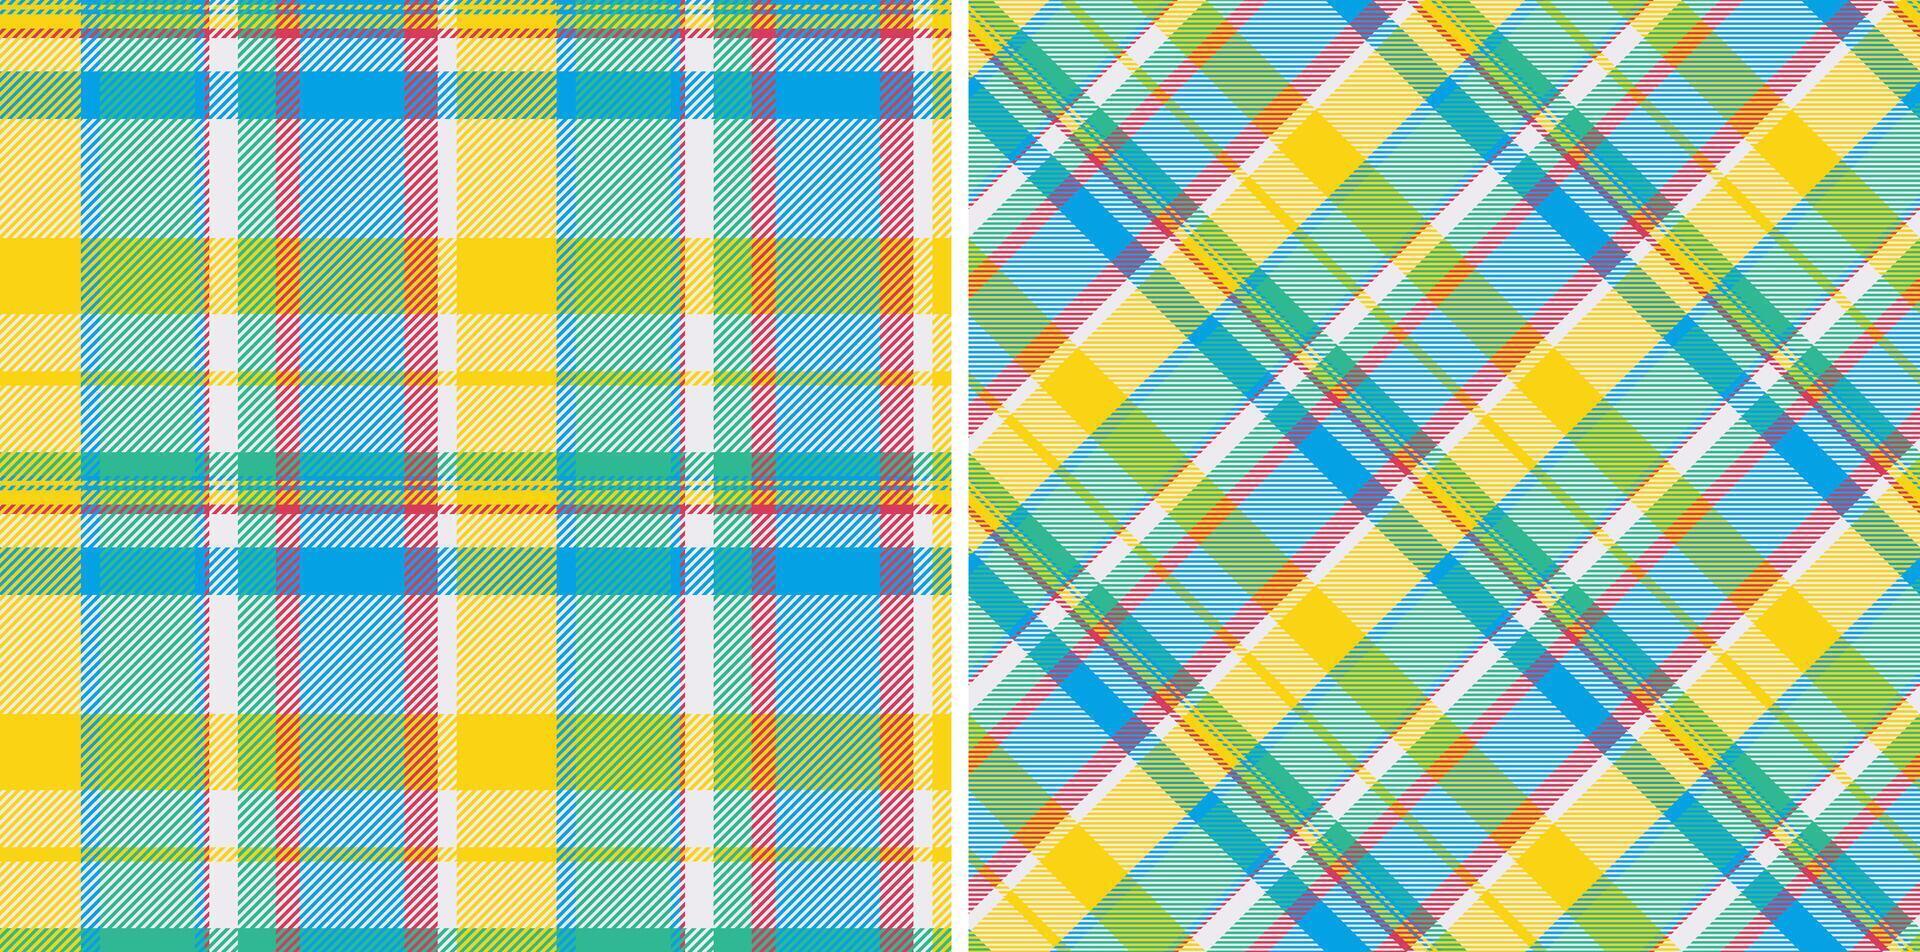 kleding stof textiel Schotse ruit van structuur achtergrond vector met een naadloos plaid controleren patroon.